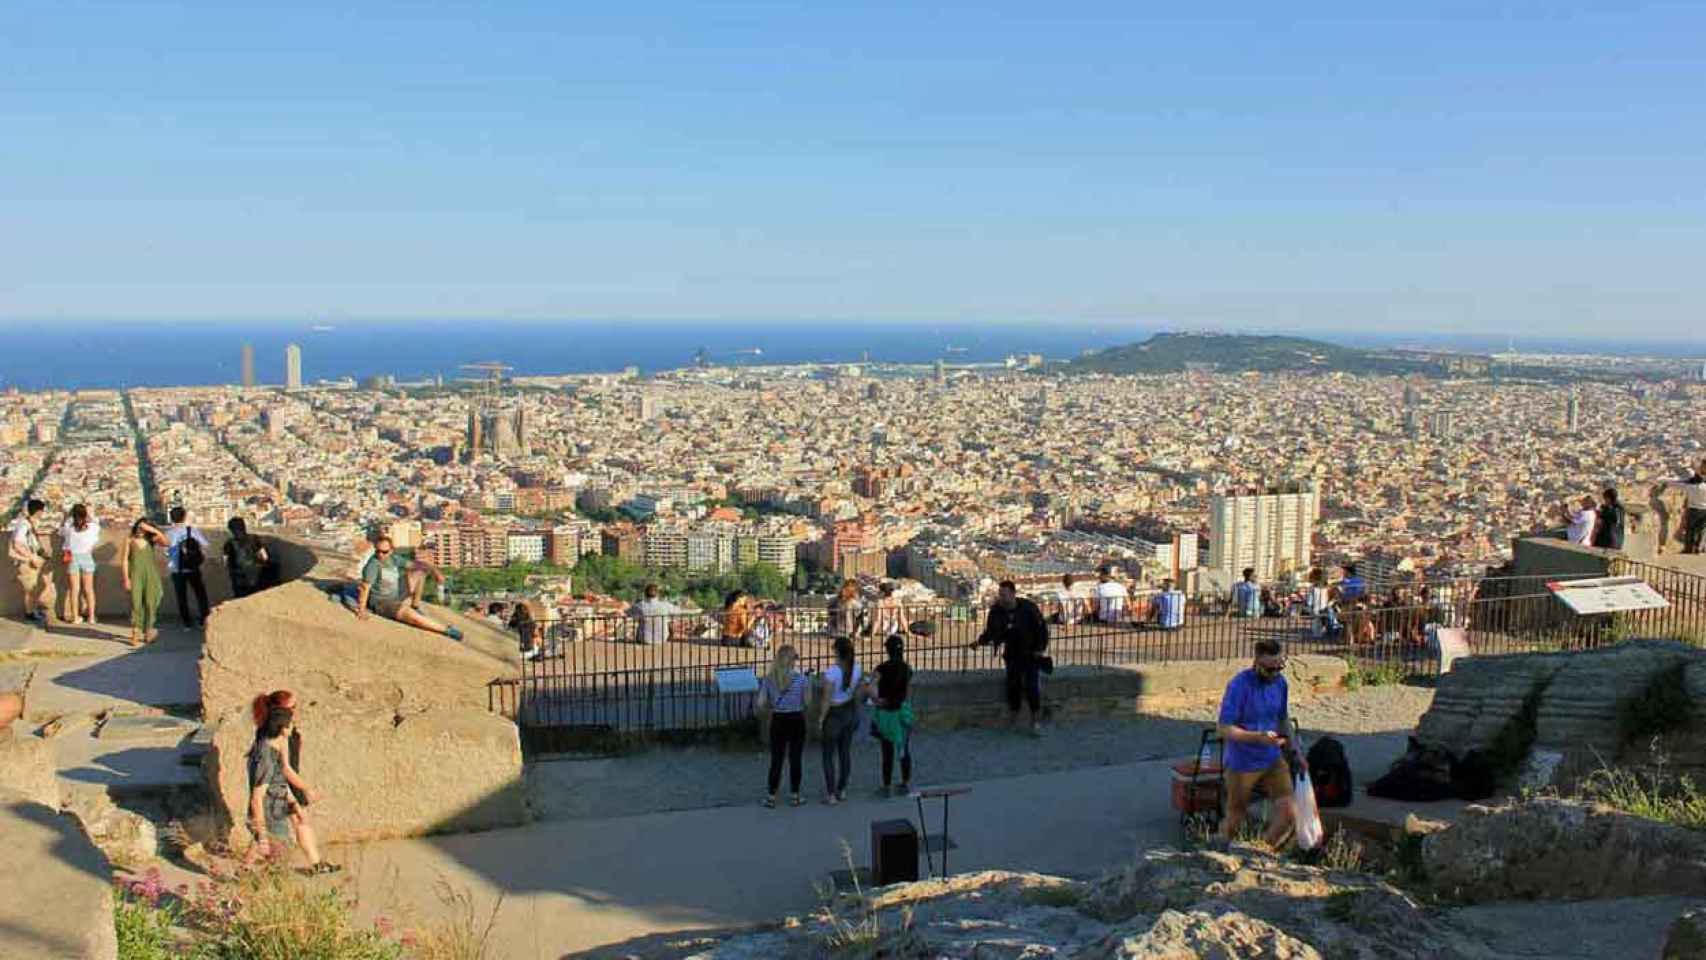 La vista de Barcelona desde el Turó de la Rovira lo ha llenado de turistas. / CR